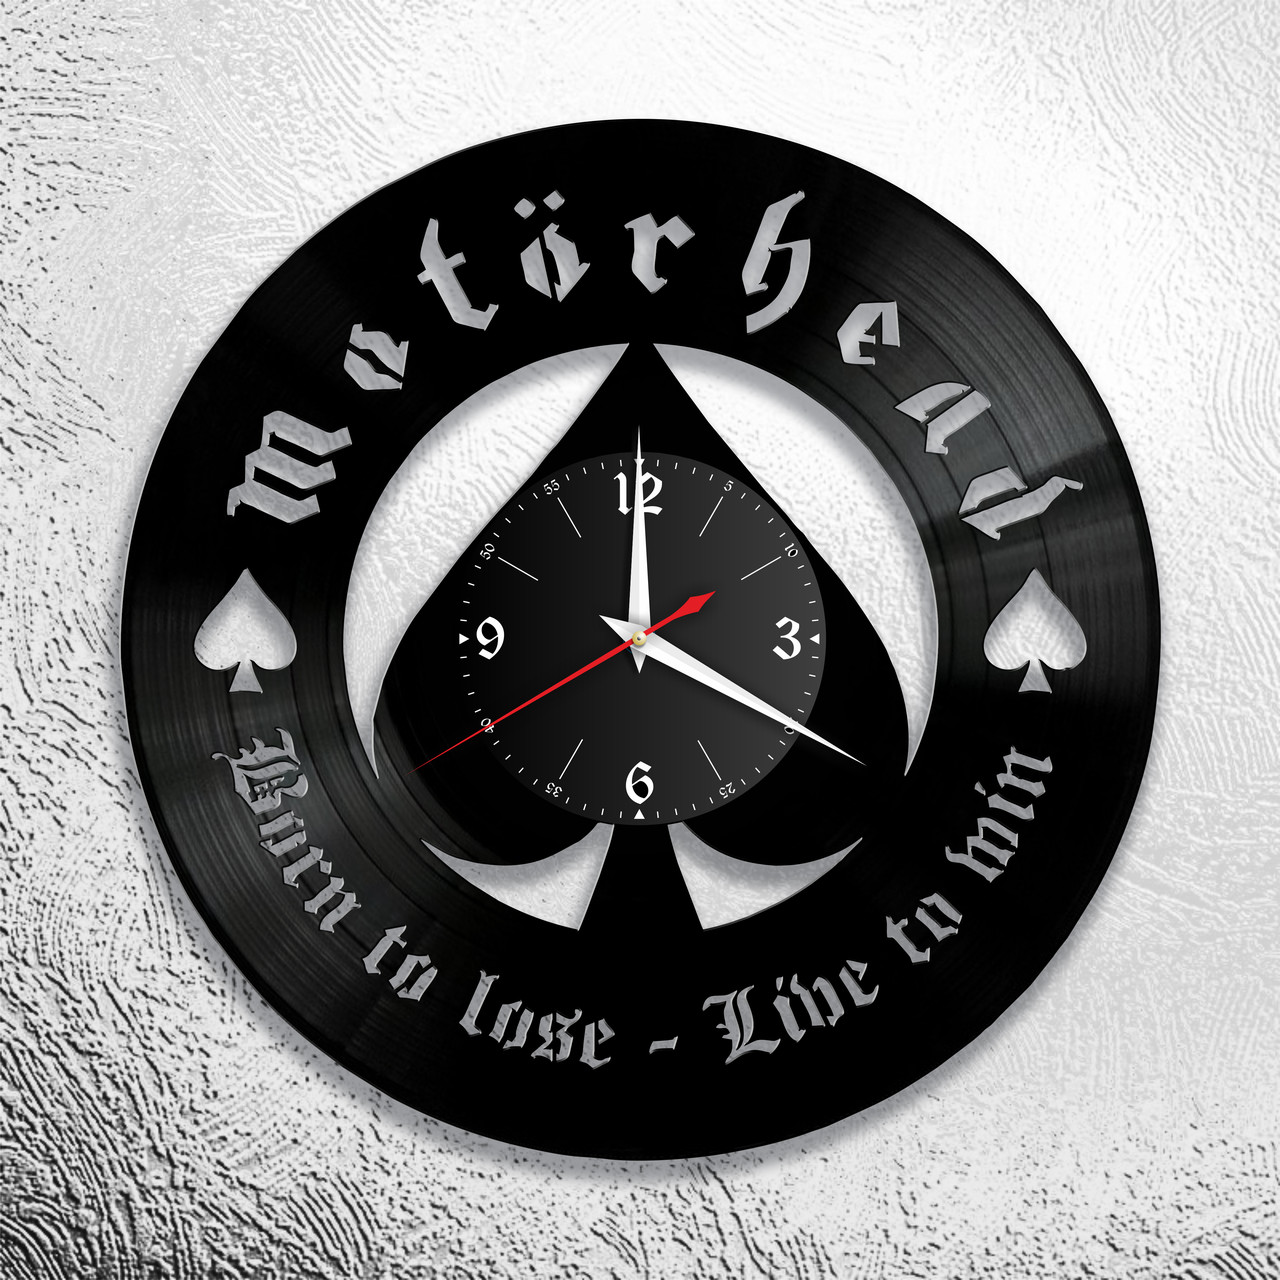 Часы из виниловой пластинки "Motorhead" версия 2, фото 1